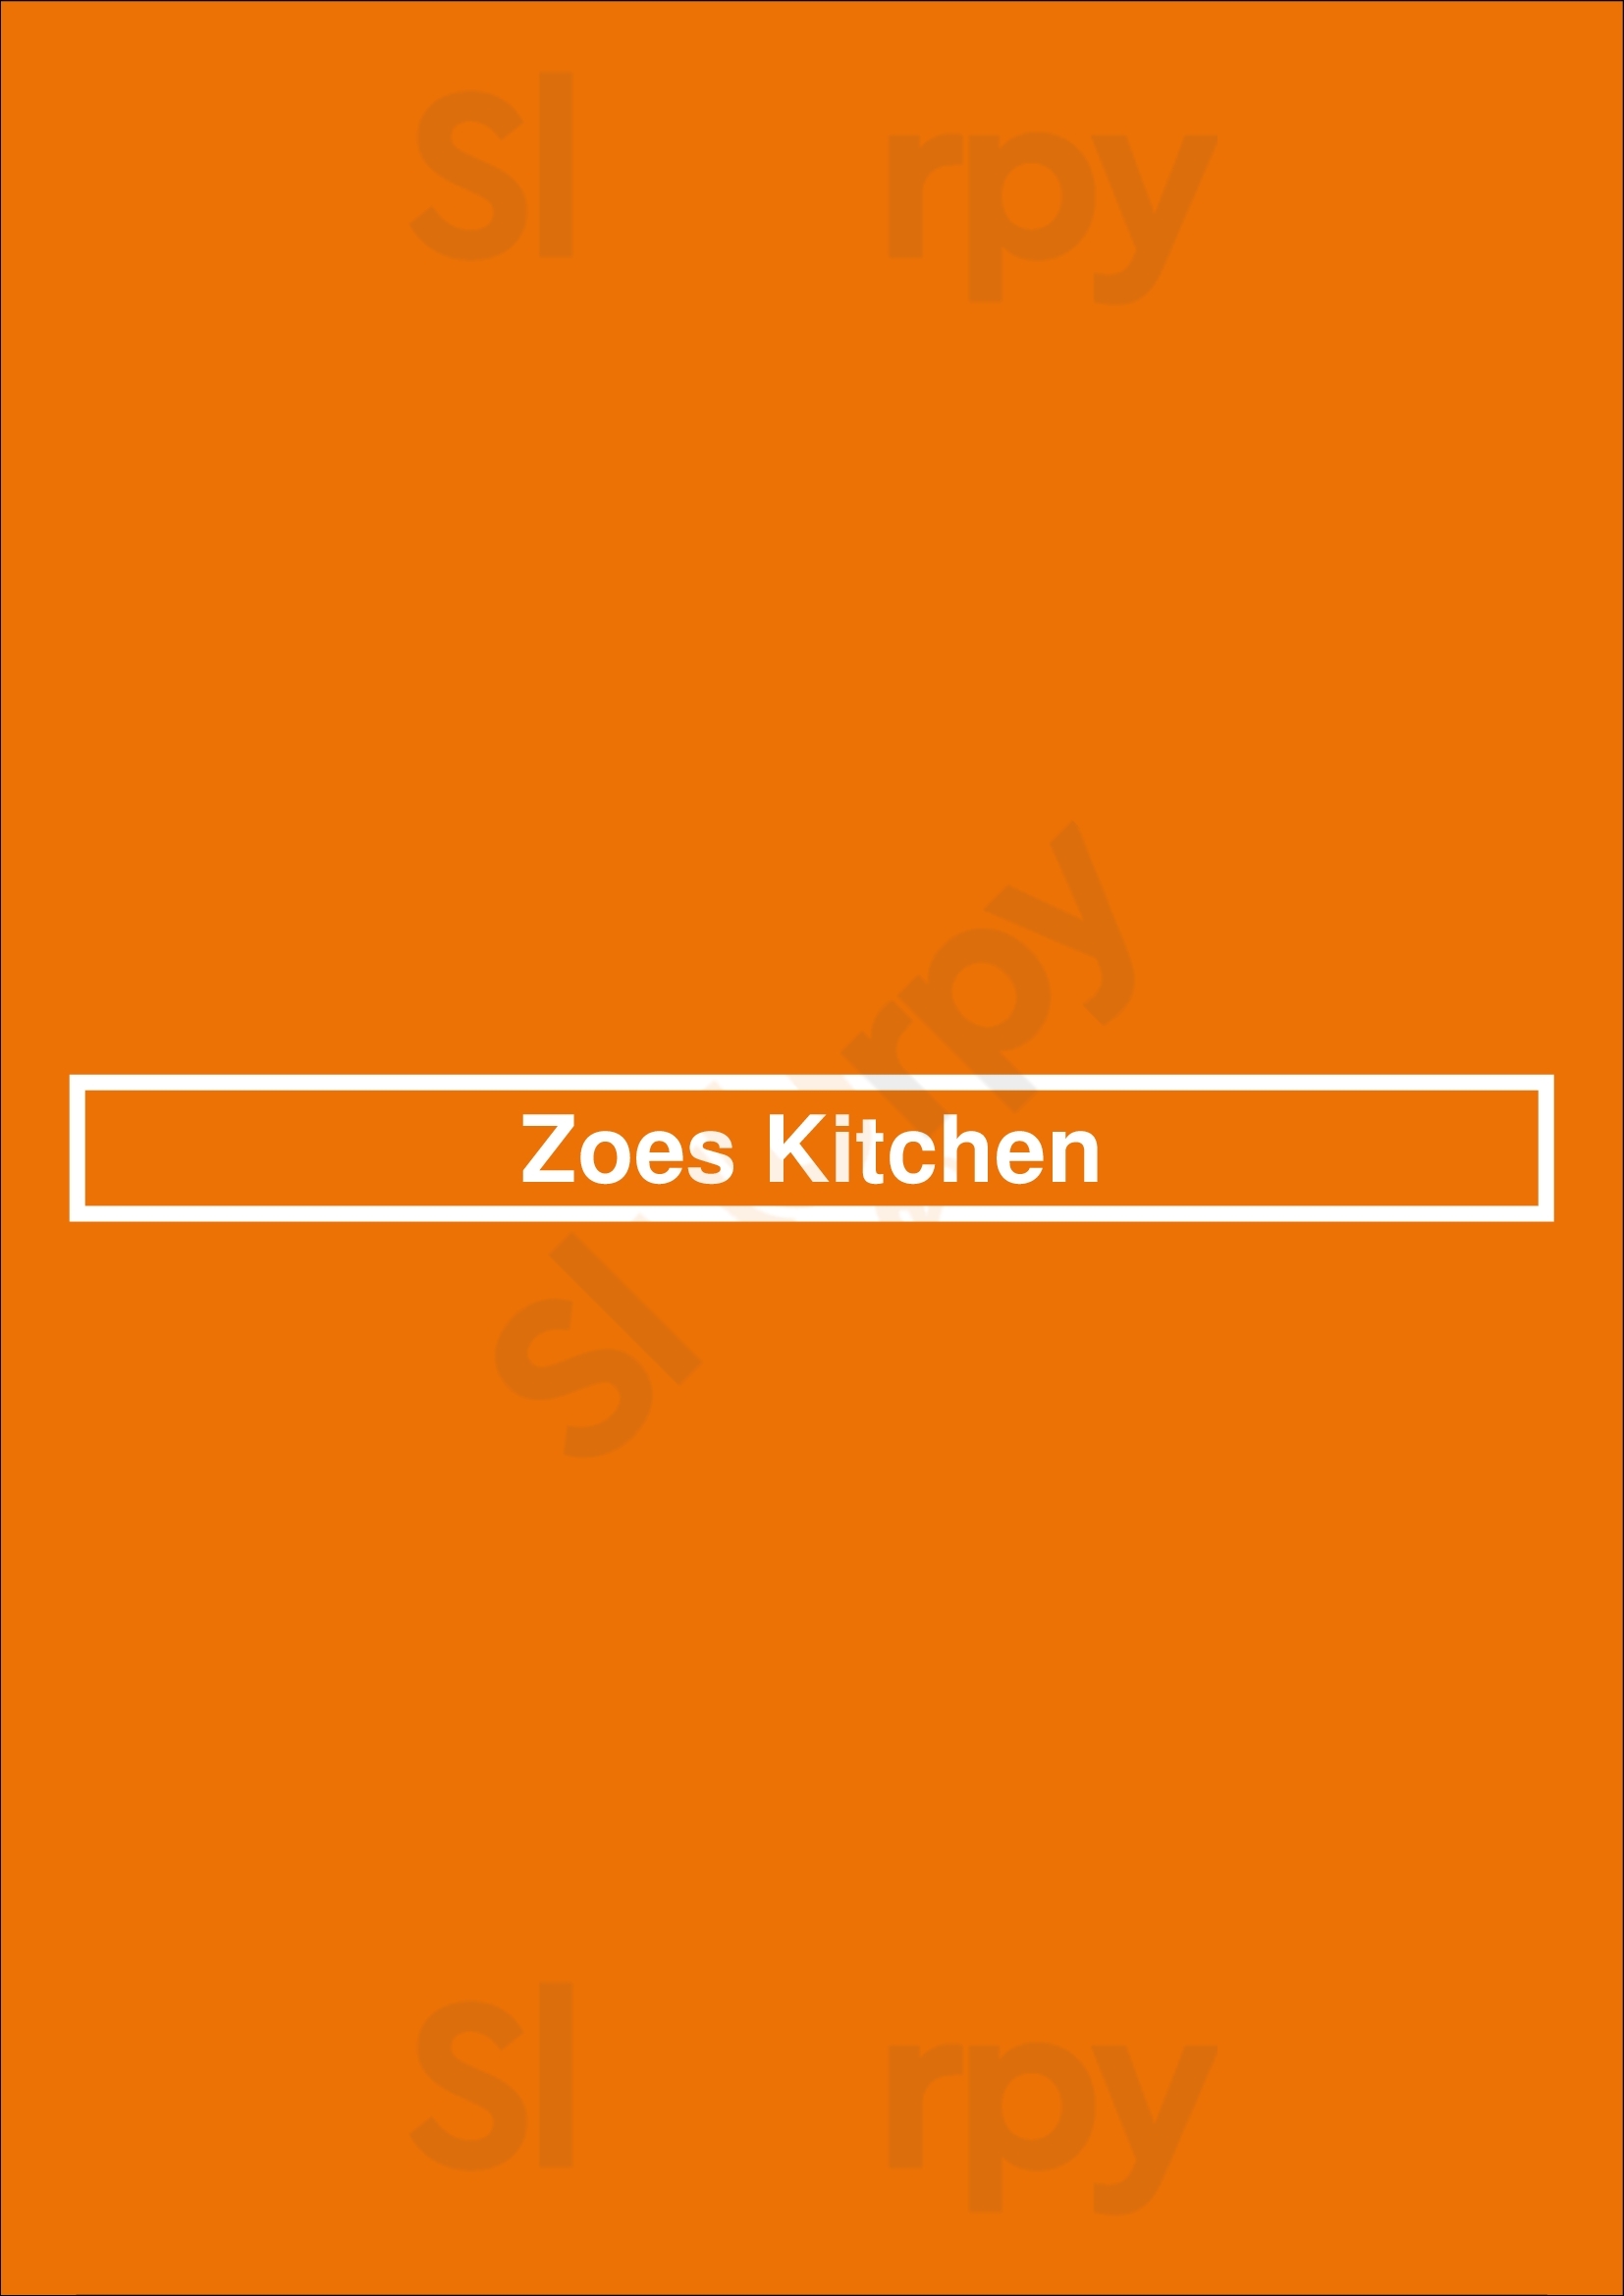 Zoe's Kitchen Orlando Menu - 1